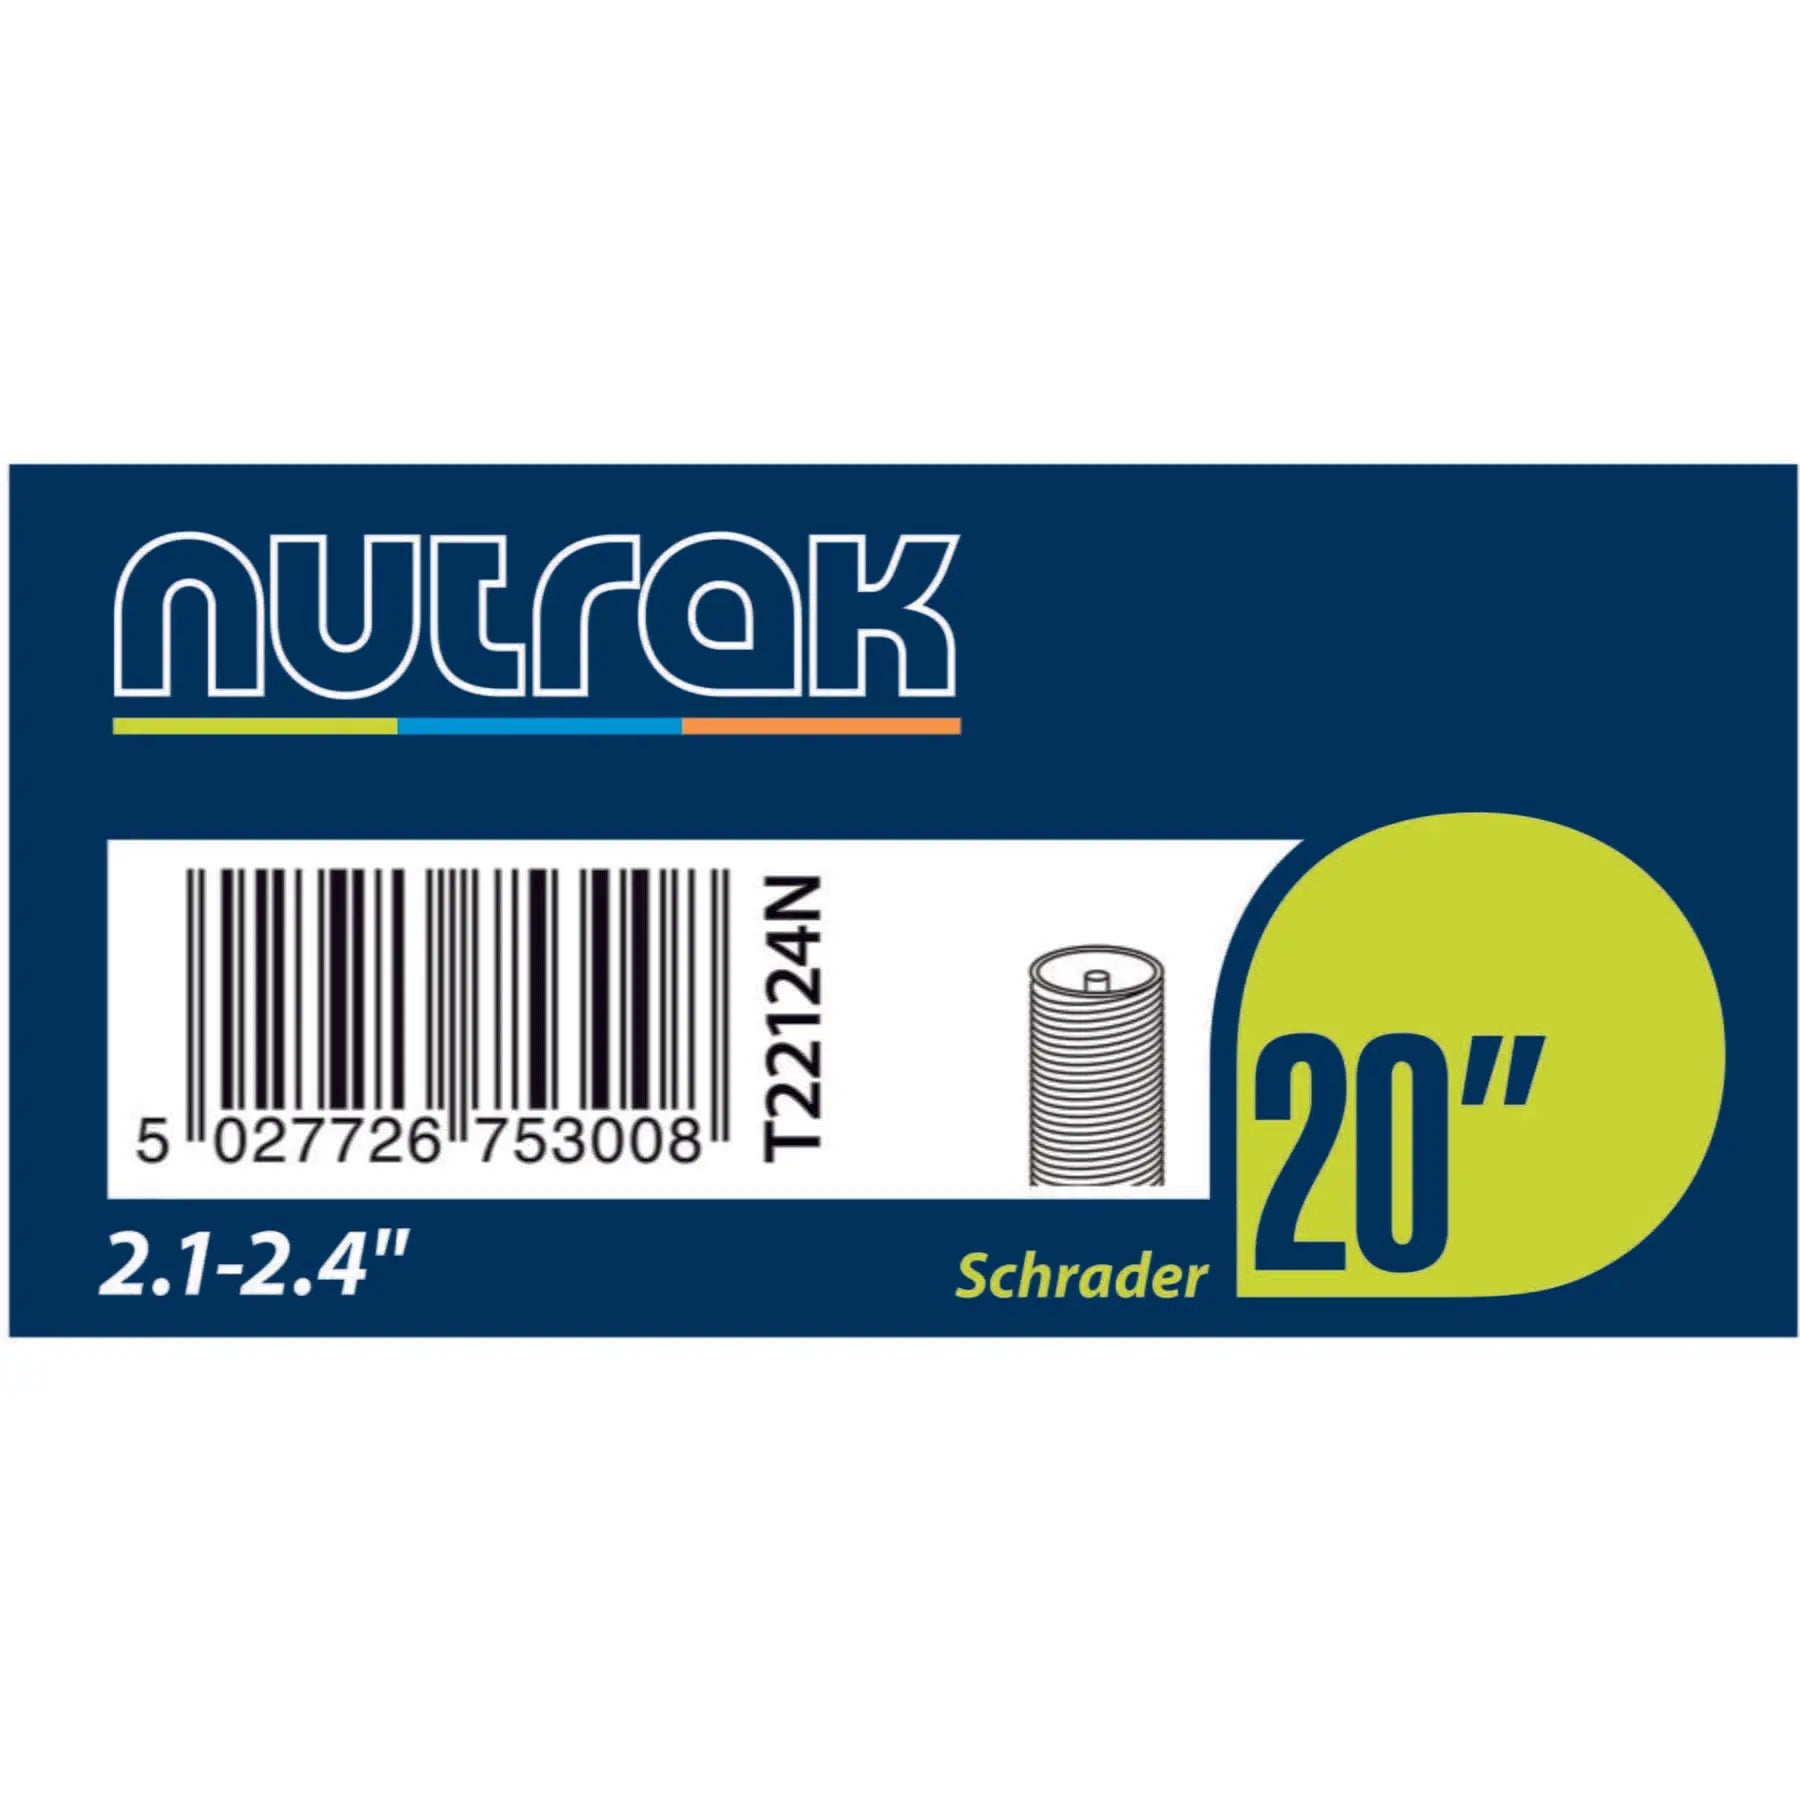 Nutrak 20 x 2.1 - 2.4 inch Schrader valve inner tube Nutrak